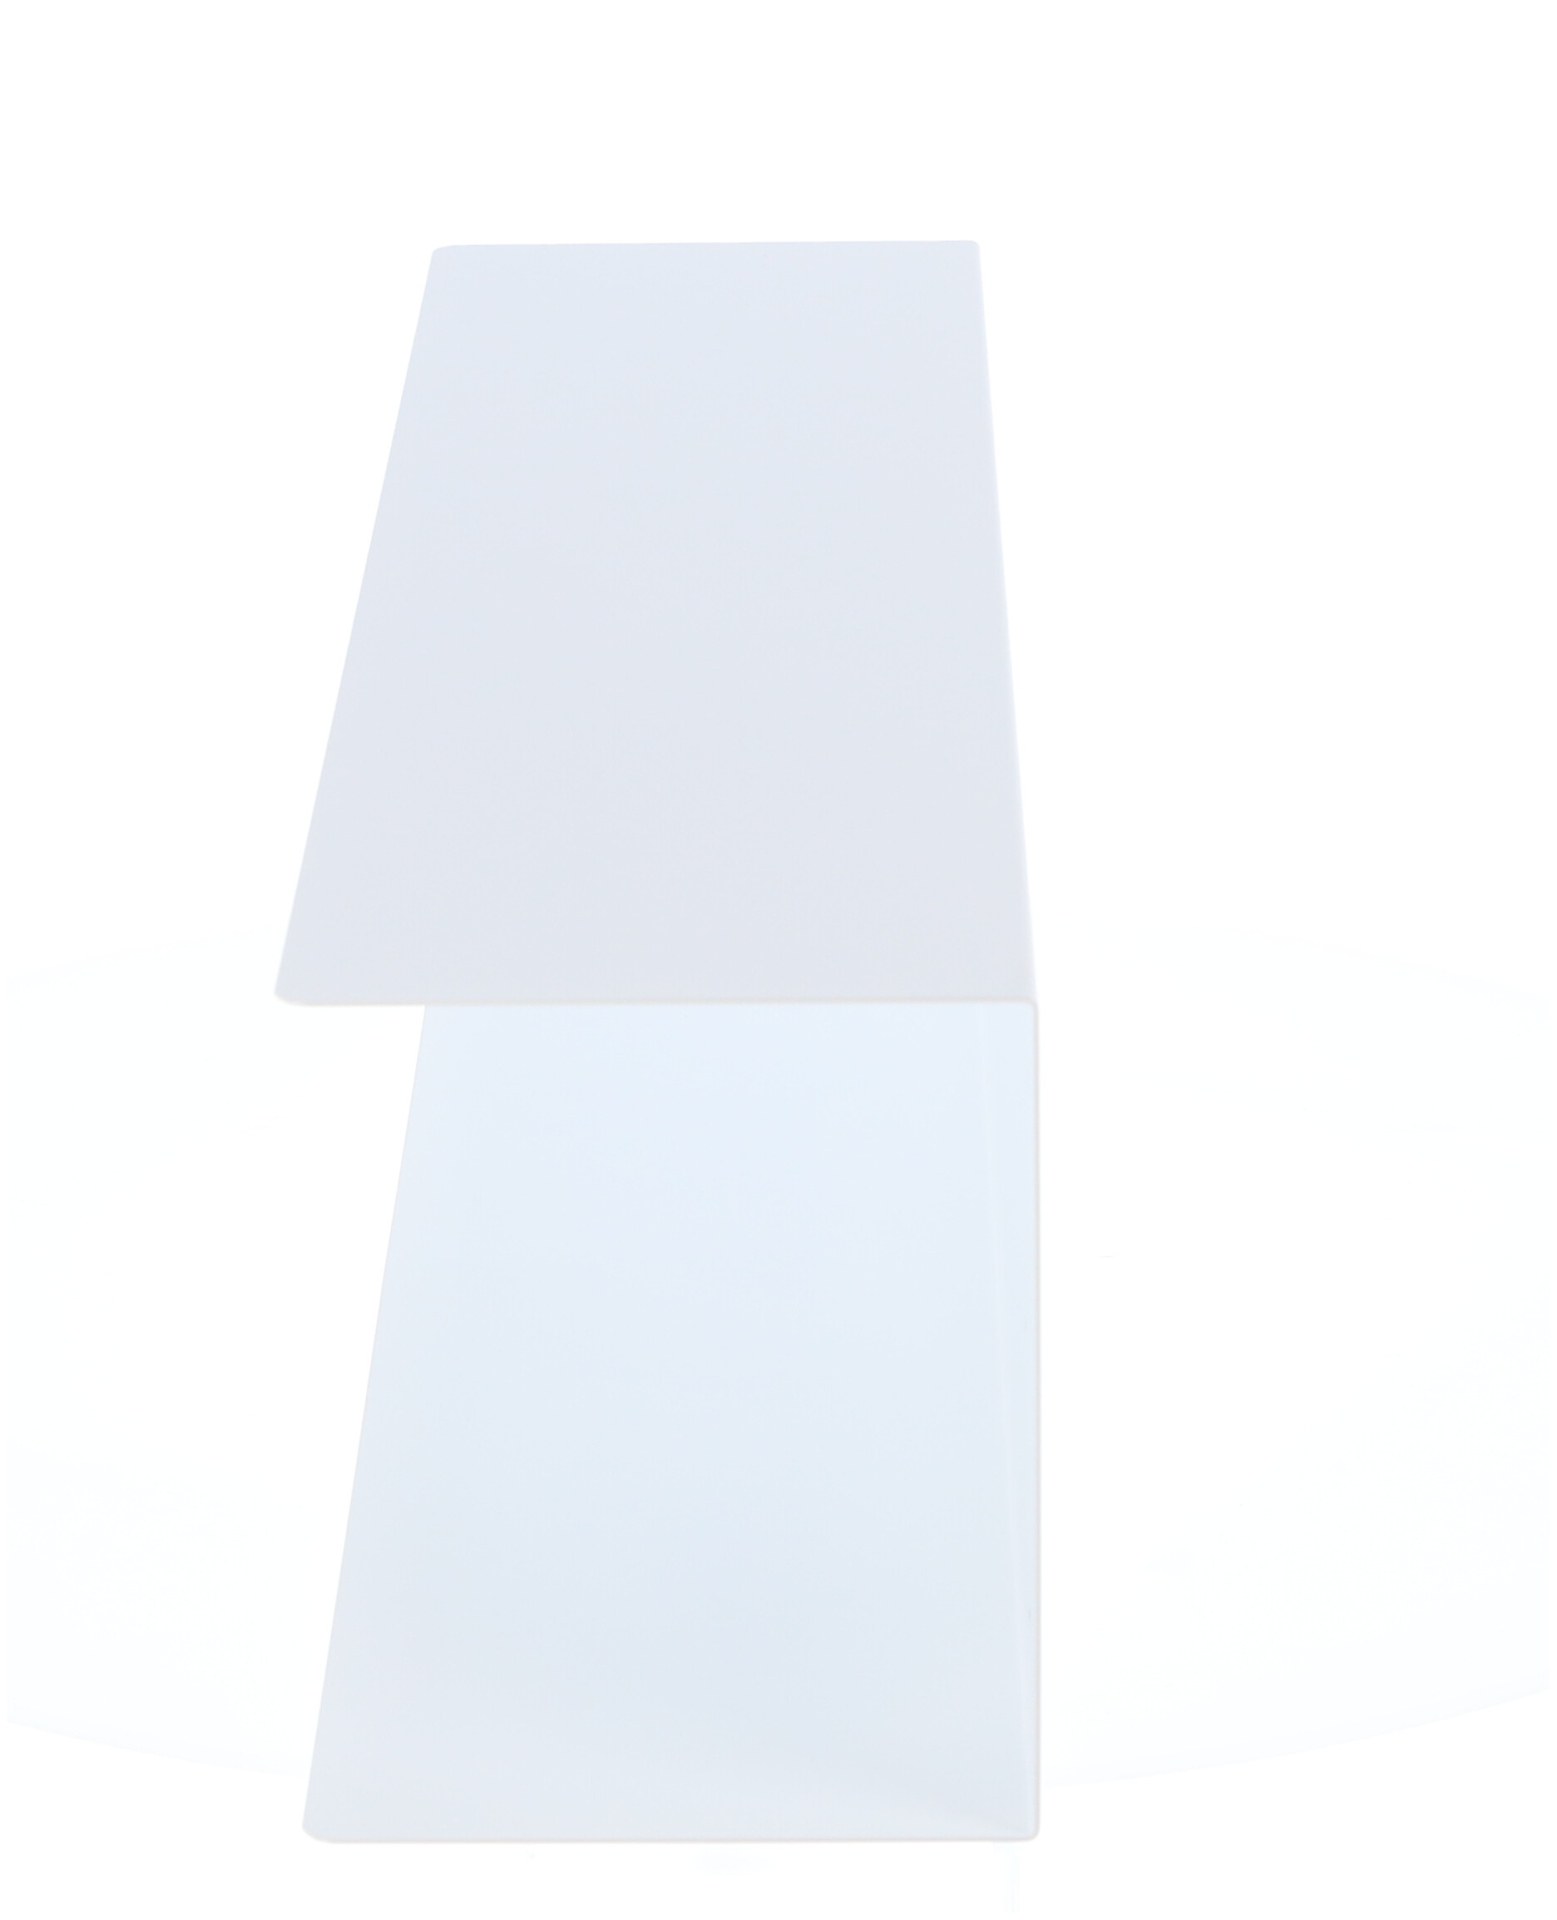 Das Wandregal Fleur wurde aus Metall gefertigt und hat einen weißen Farbton. Die Breite beträgt 80 cm. Das Design ist schlicht aber auch modern. Das Regal ist ein Produkt der Marke Jan Kurtz.